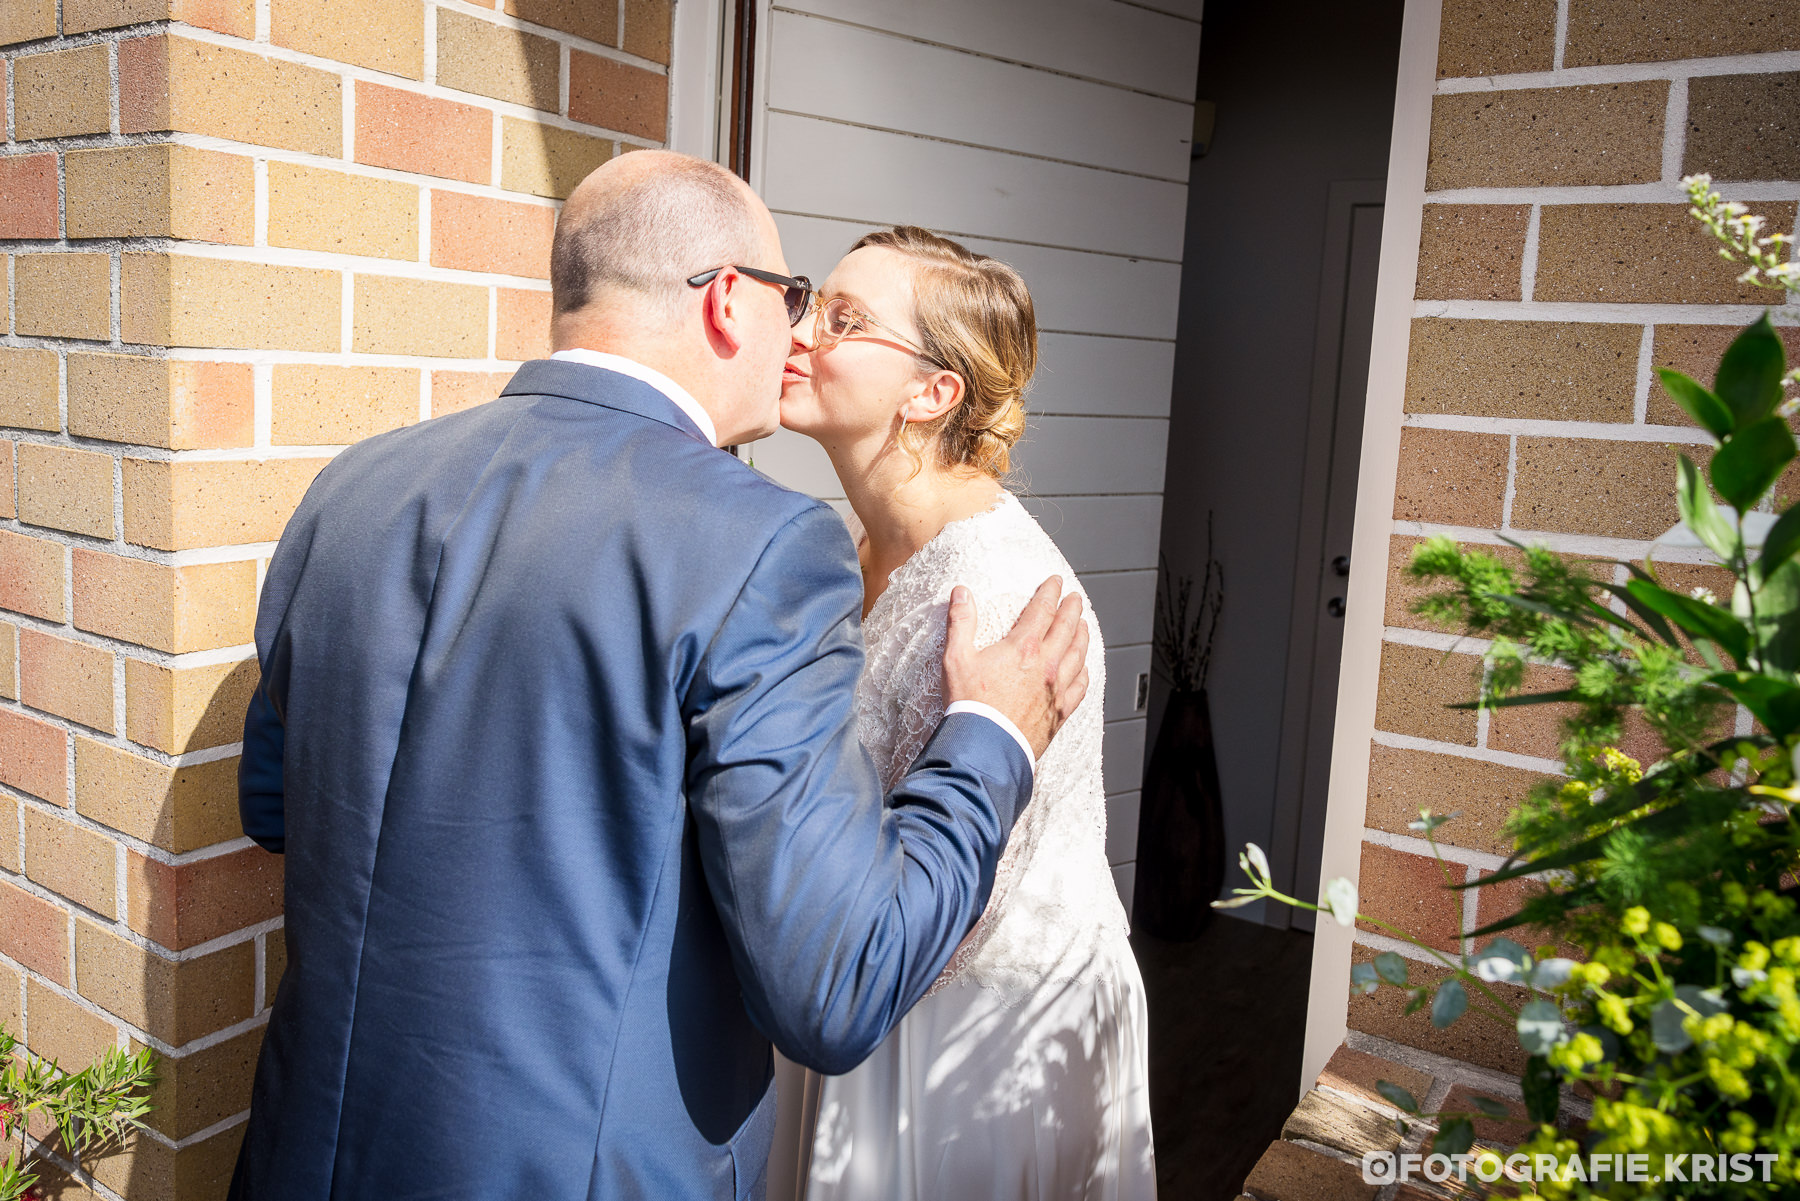 Huwelijk Marion & Lorenz - Getting Ready - FotografieKrist Menen